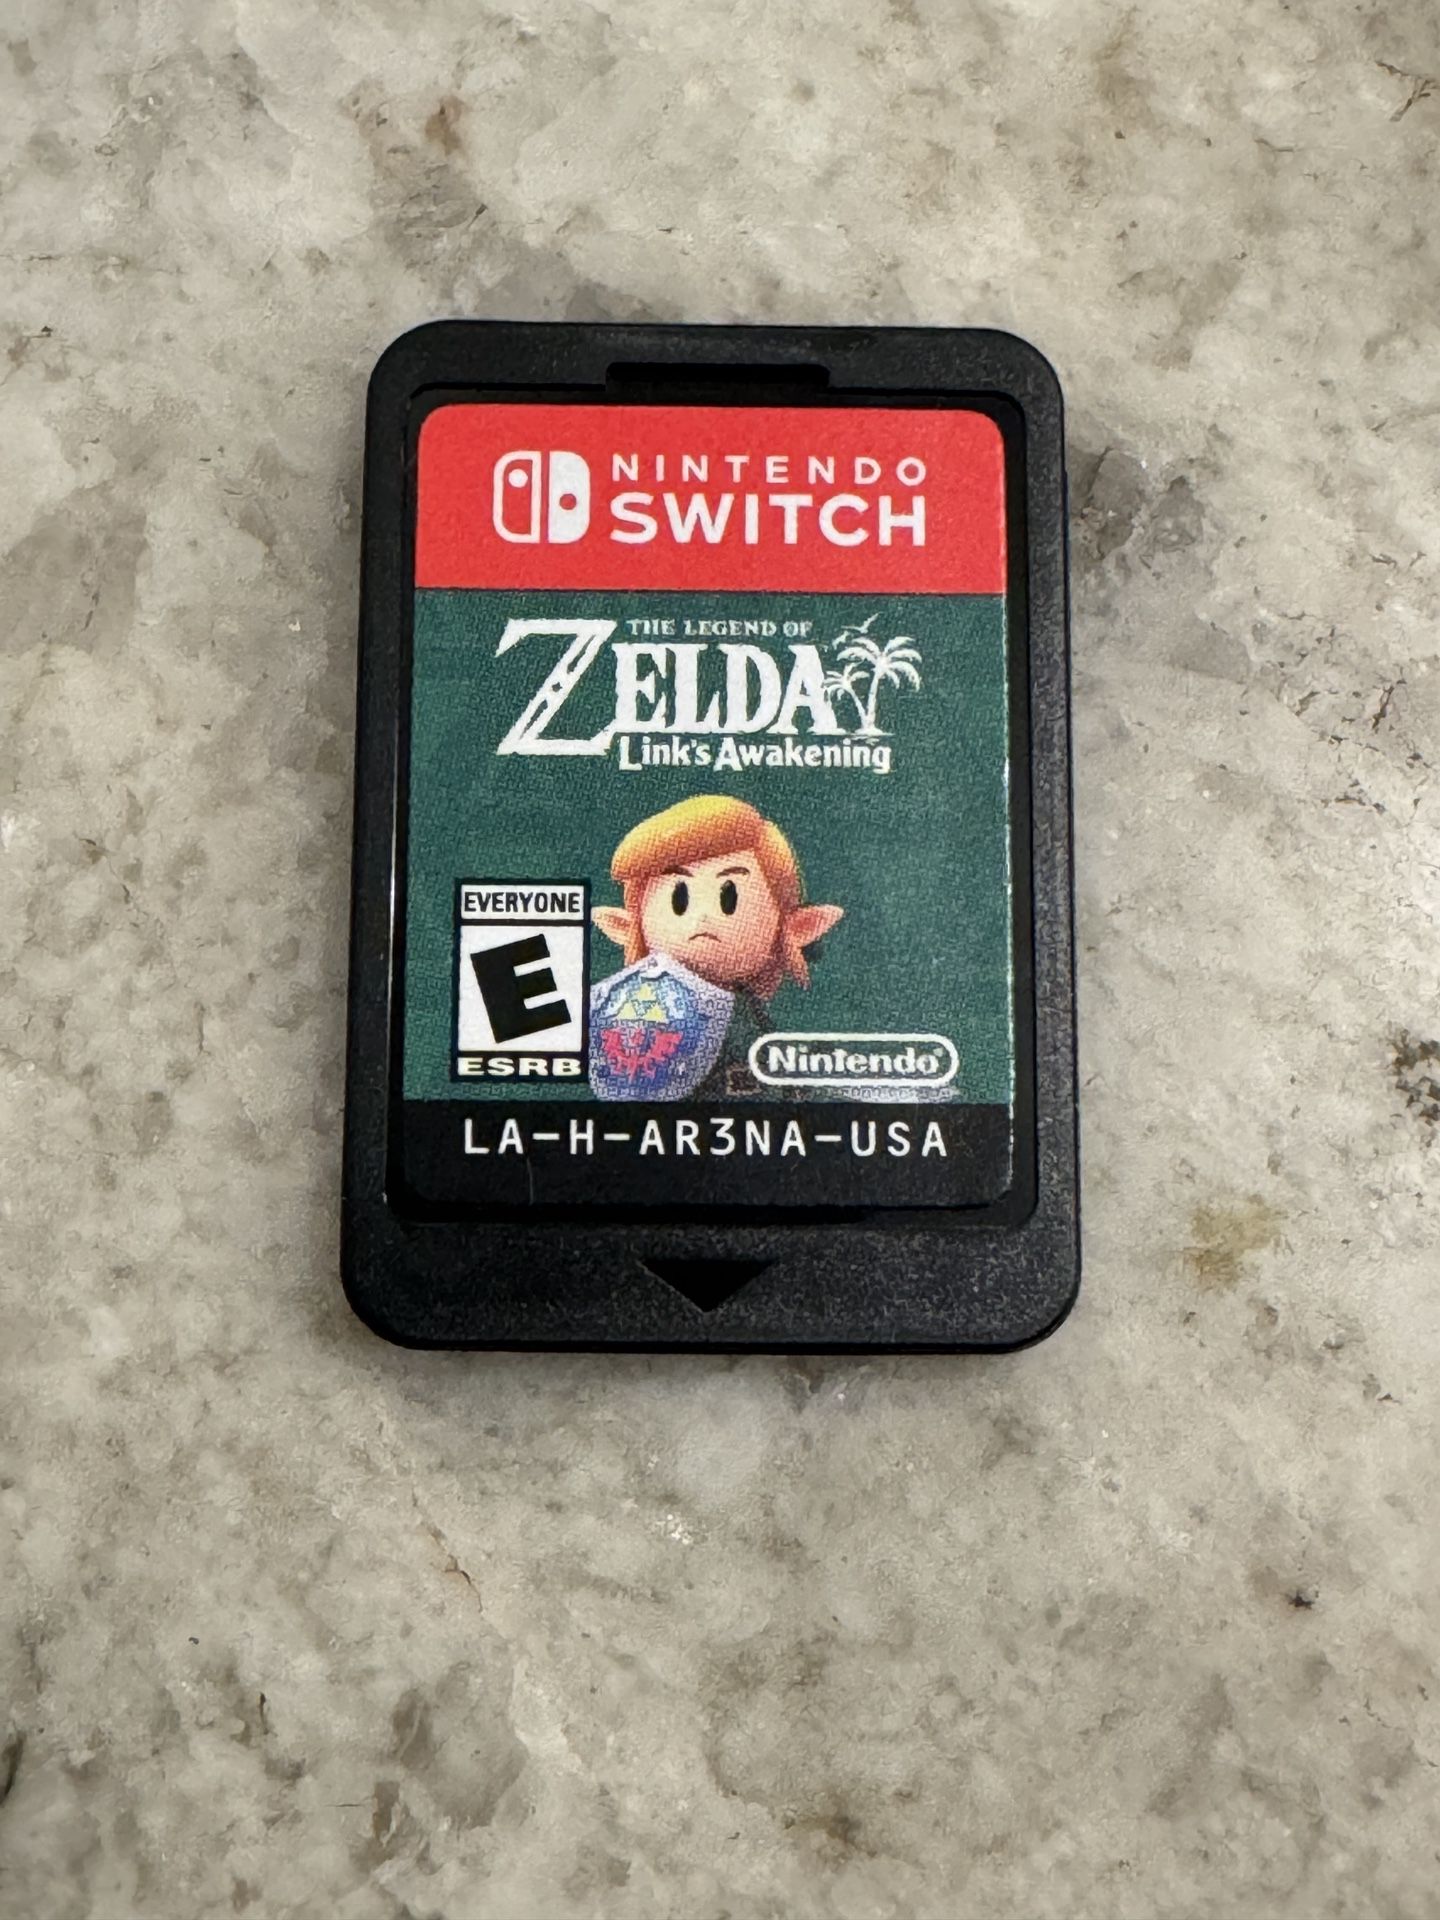 The Legend of Zelda: Link's Awakening-Nintendo Switch